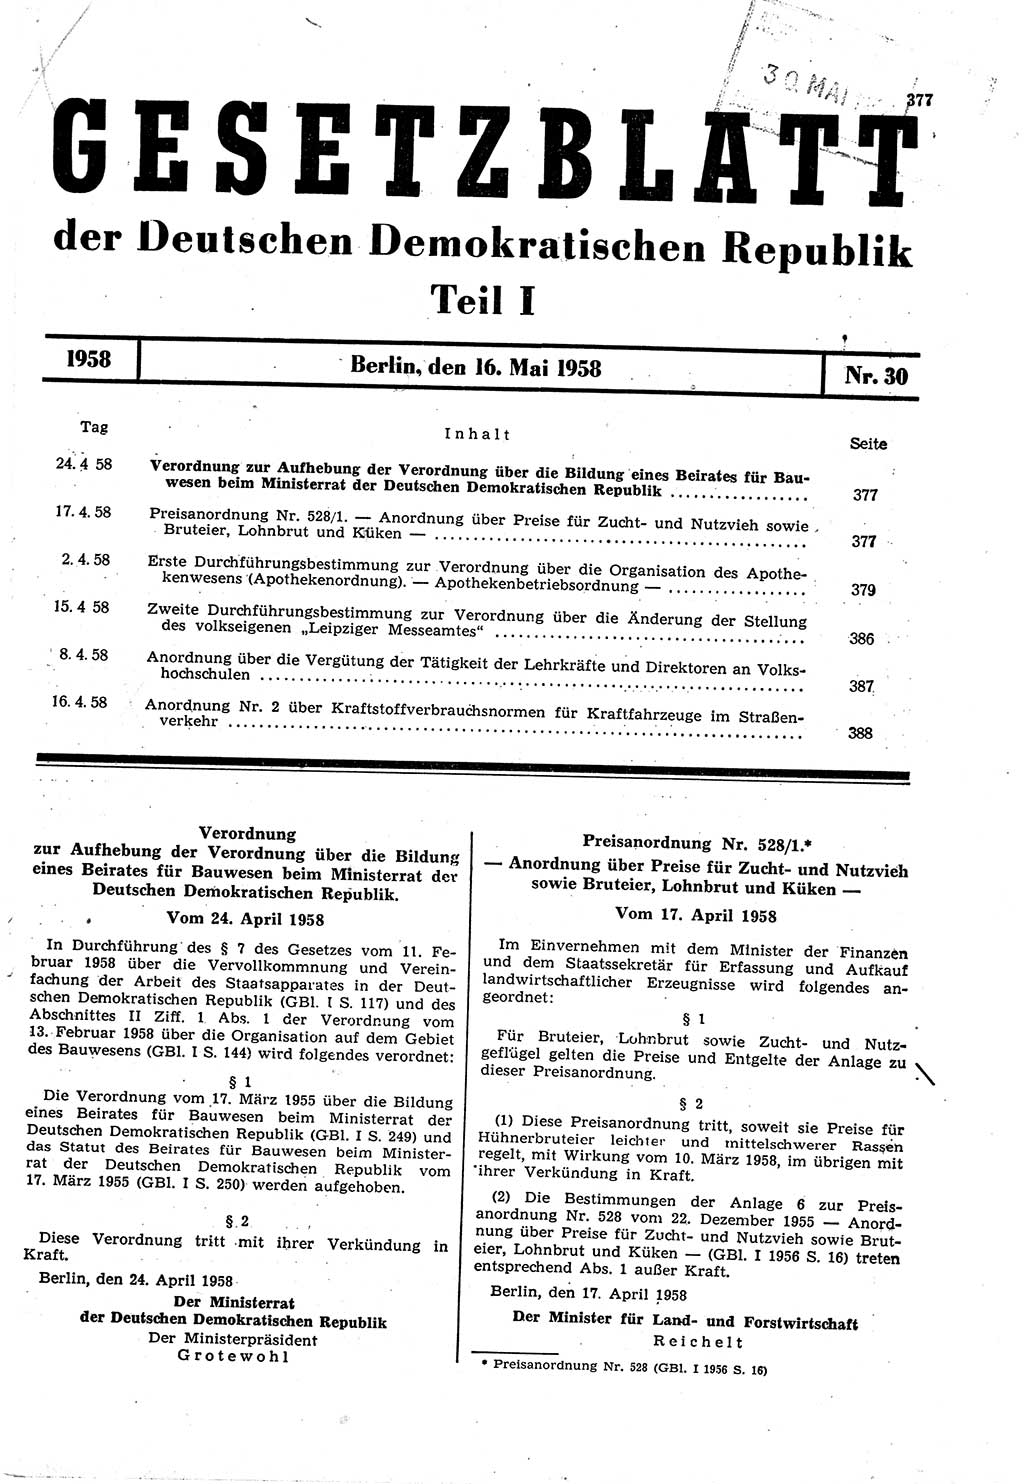 Gesetzblatt (GBl.) der Deutschen Demokratischen Republik (DDR) Teil Ⅰ 1958, Seite 377 (GBl. DDR Ⅰ 1958, S. 377)